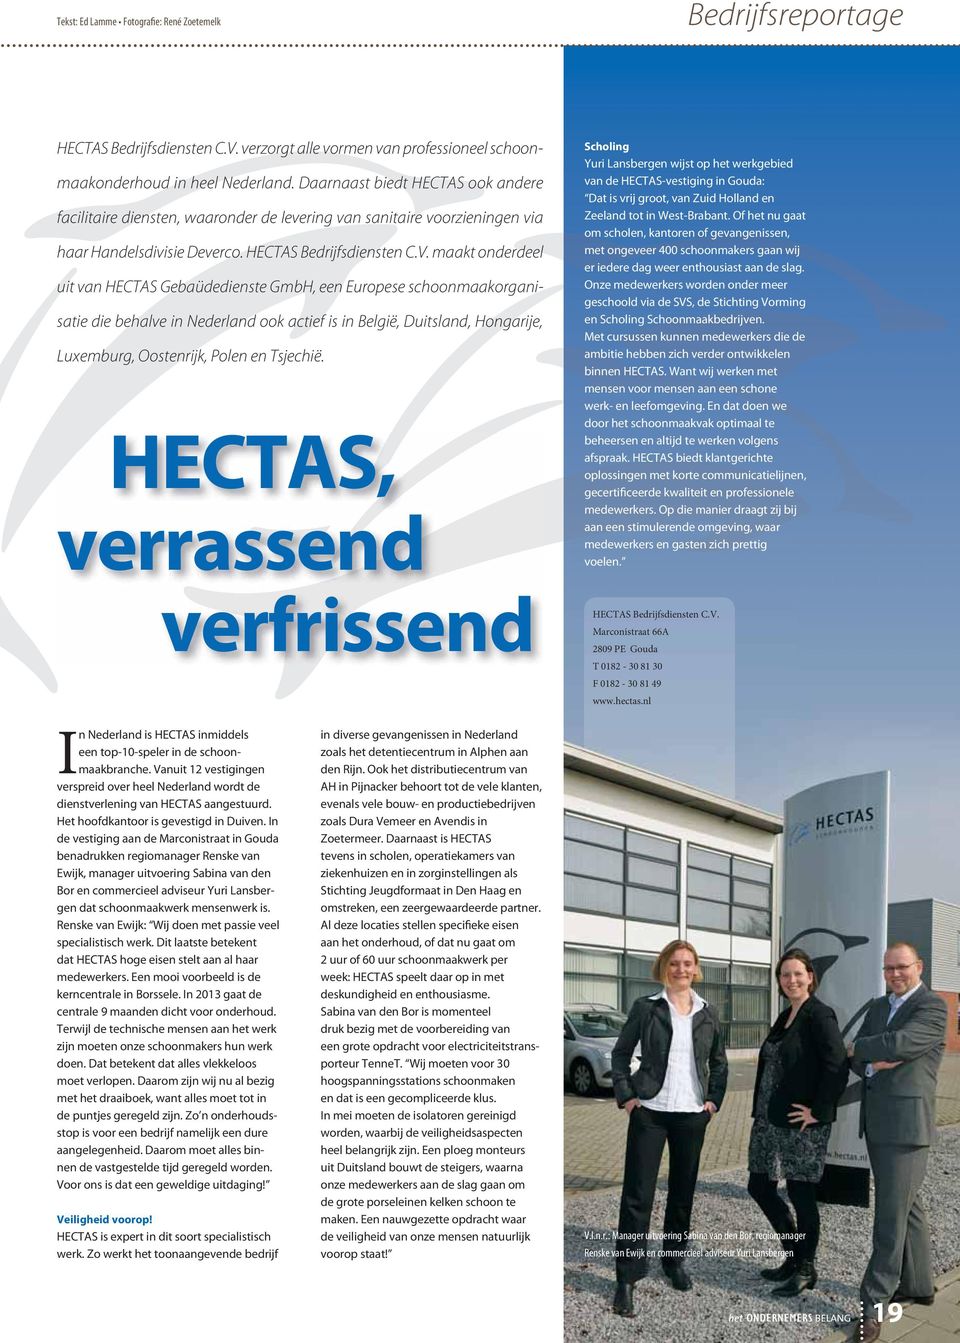 maakt onderdeel uit van HECTAS Gebaüdedienste GmbH, een Europese schoonmaakorganisatie die behalve in Nederland ook actief is in België, Duitsland, Hongarije, Luxemburg, Oostenrijk, Polen en Tsjechië.